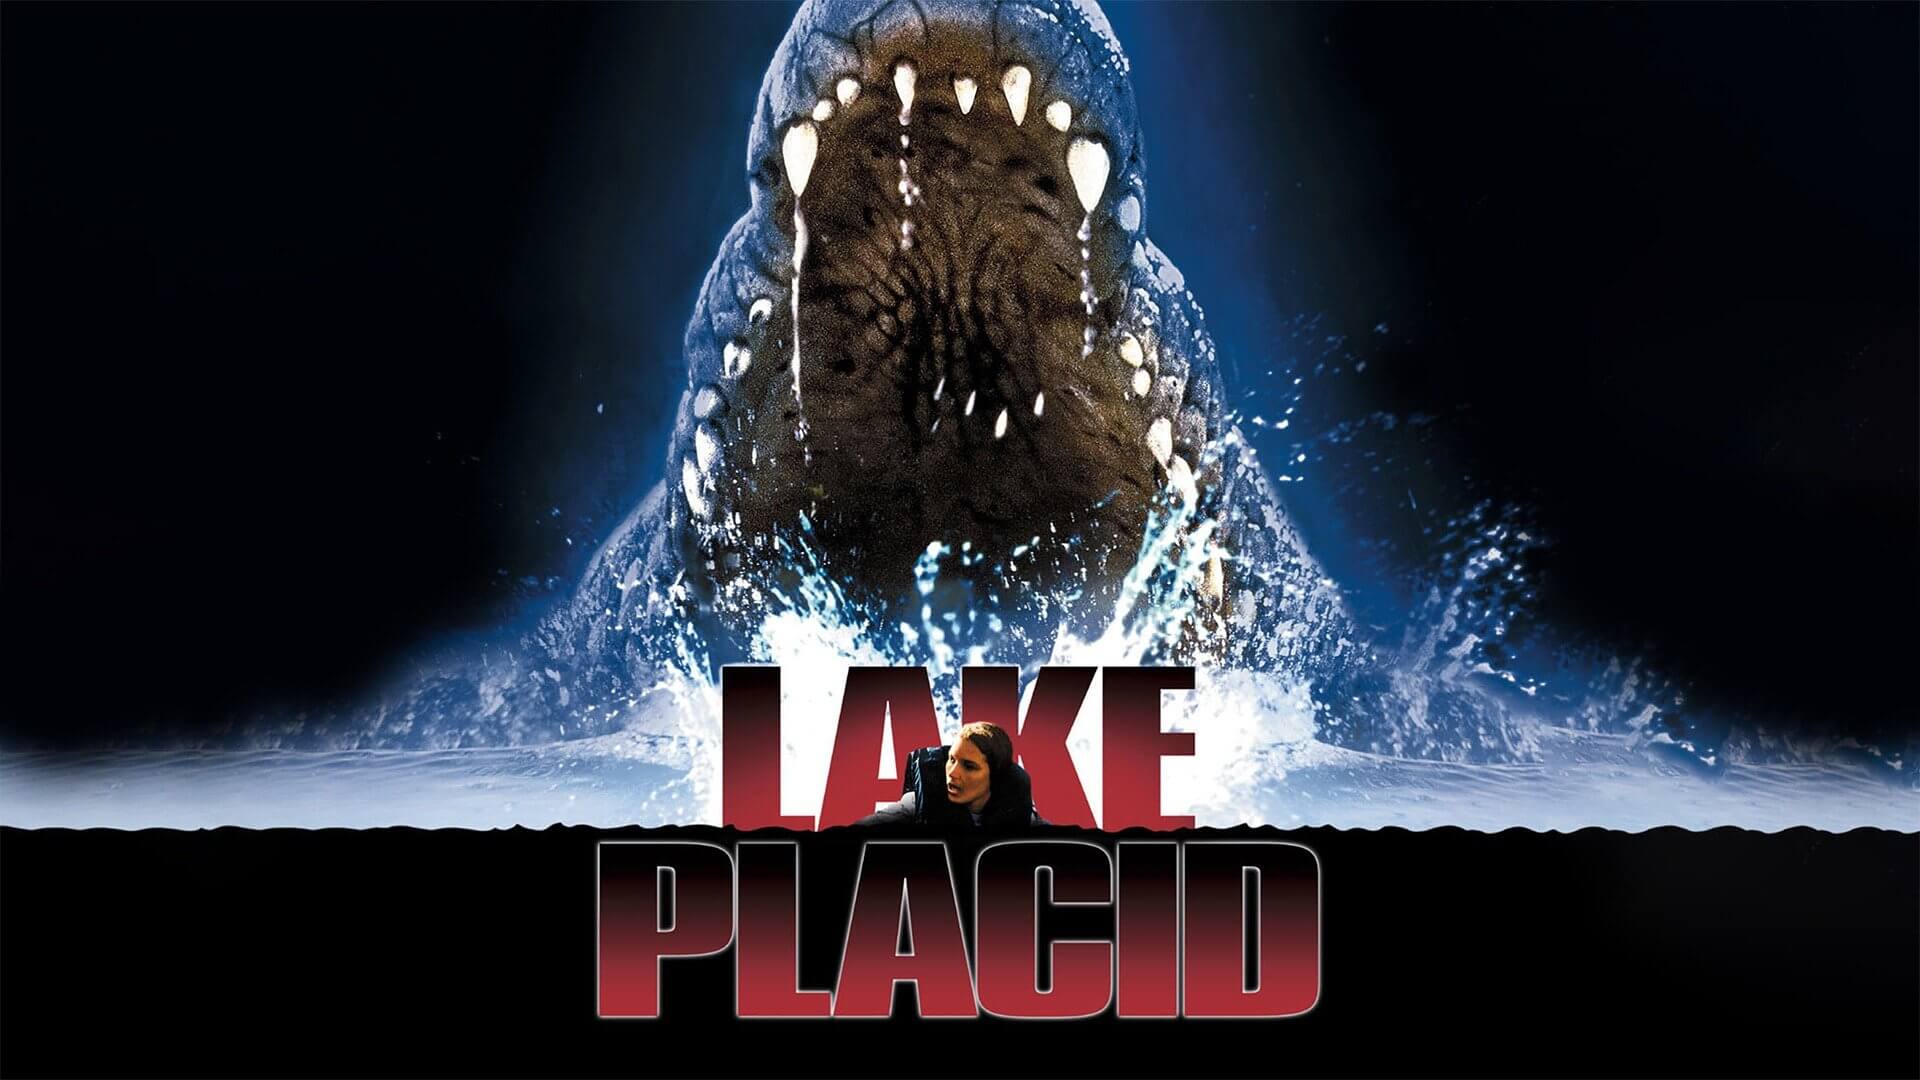 Lake Placid (Το Μυστικό της Μαύρης Λίμνης) Review